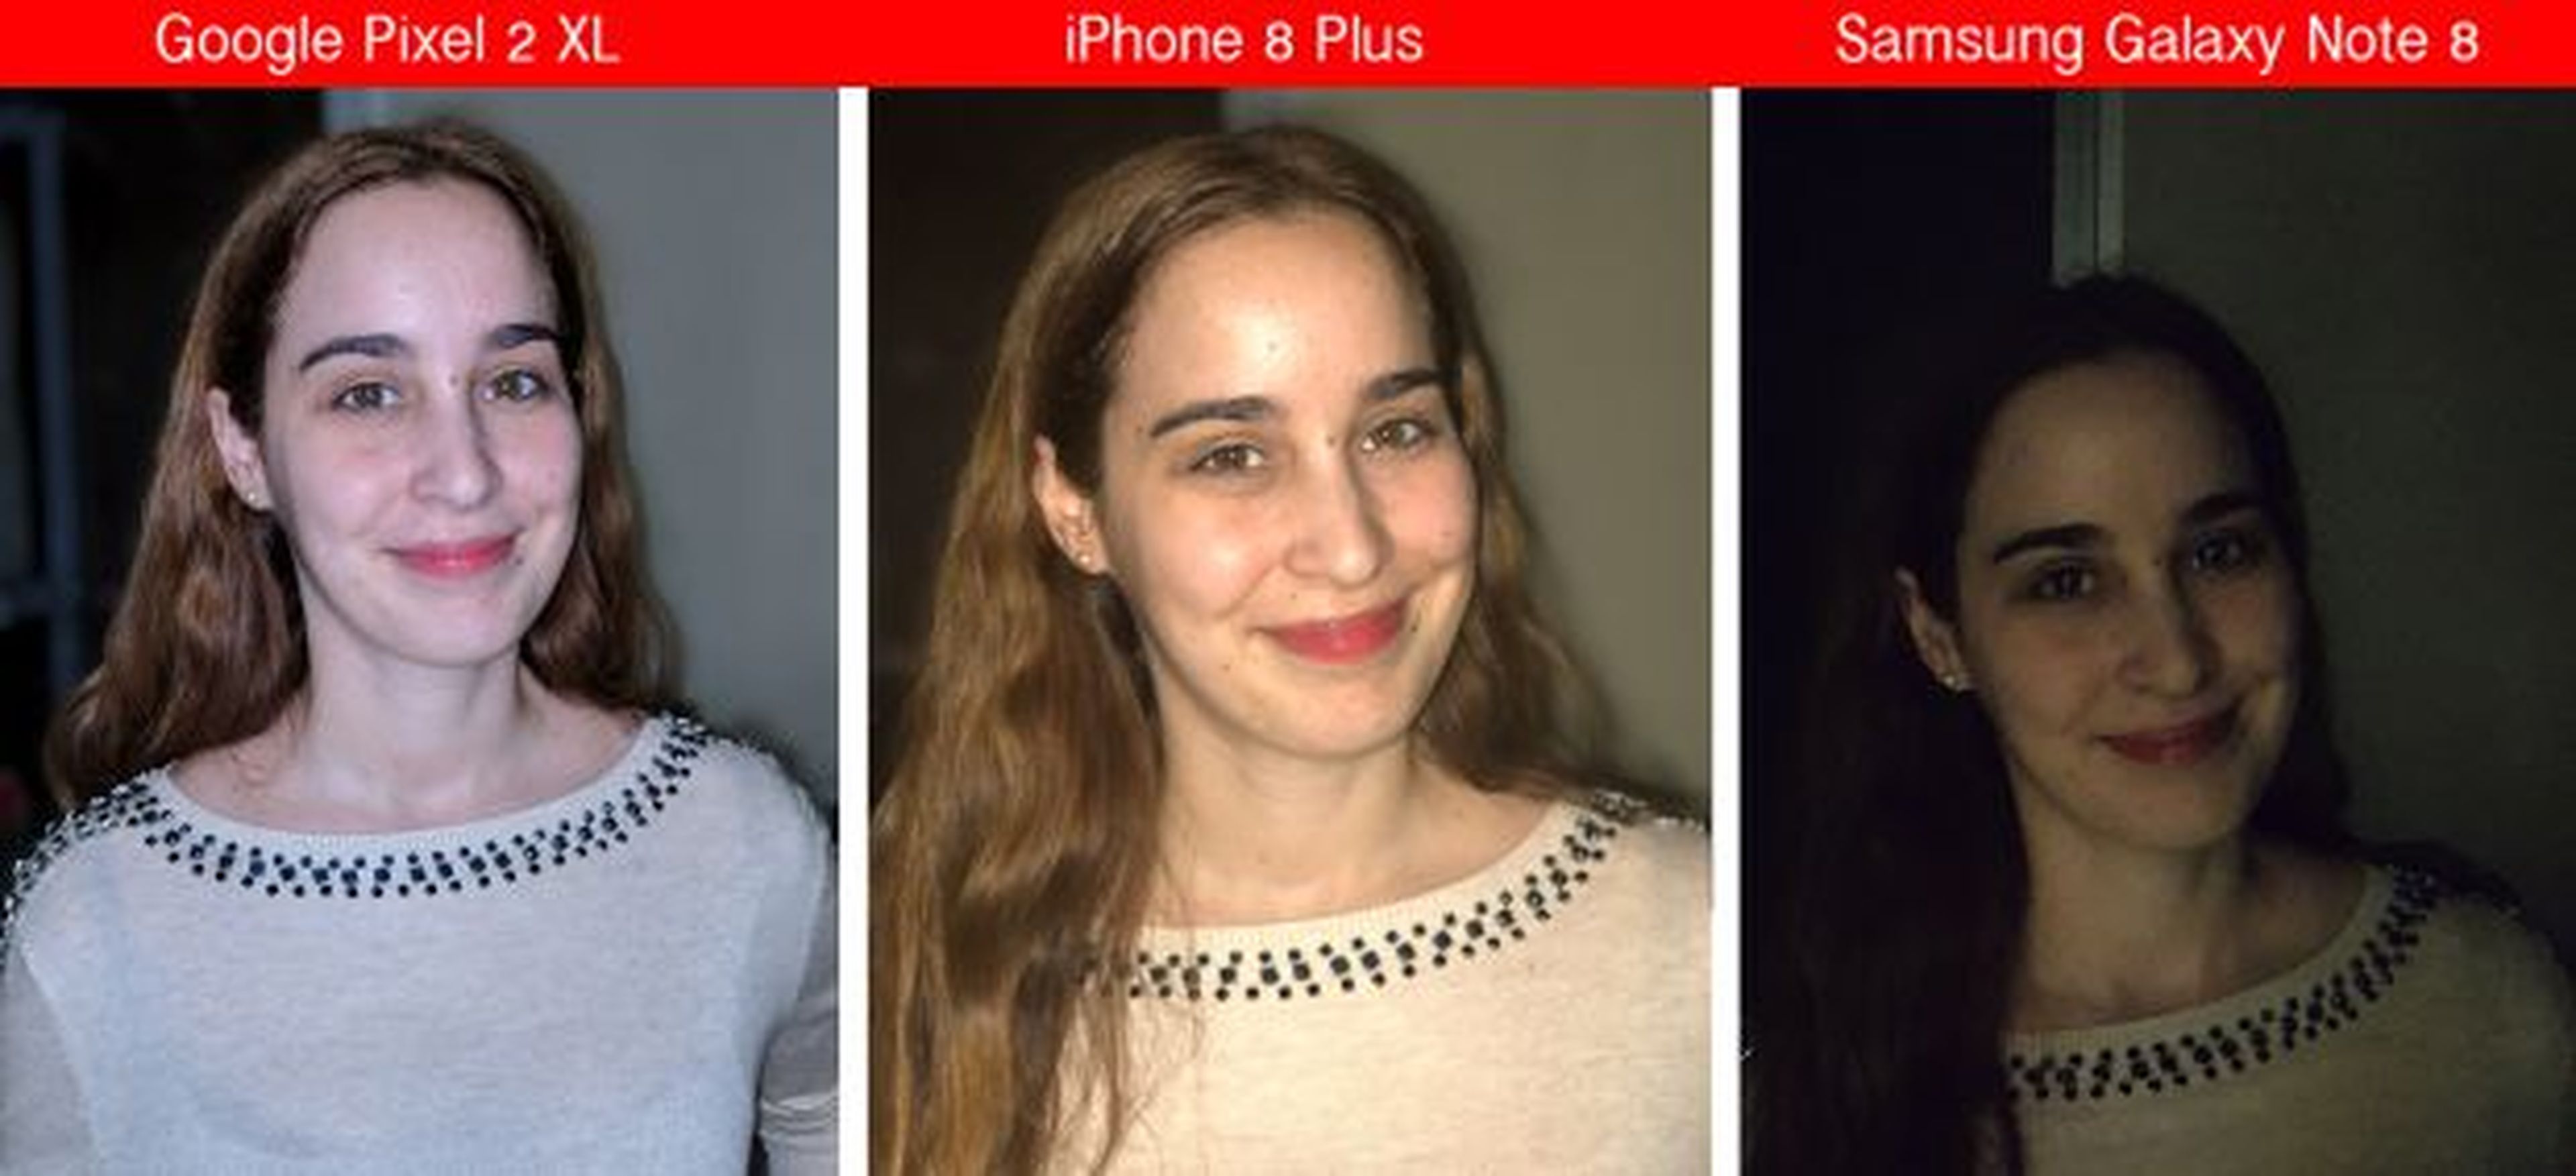 Comparativa de Modo Retrato: Pixel 2 XL vs Note 8 vs iPhone 8 Plus